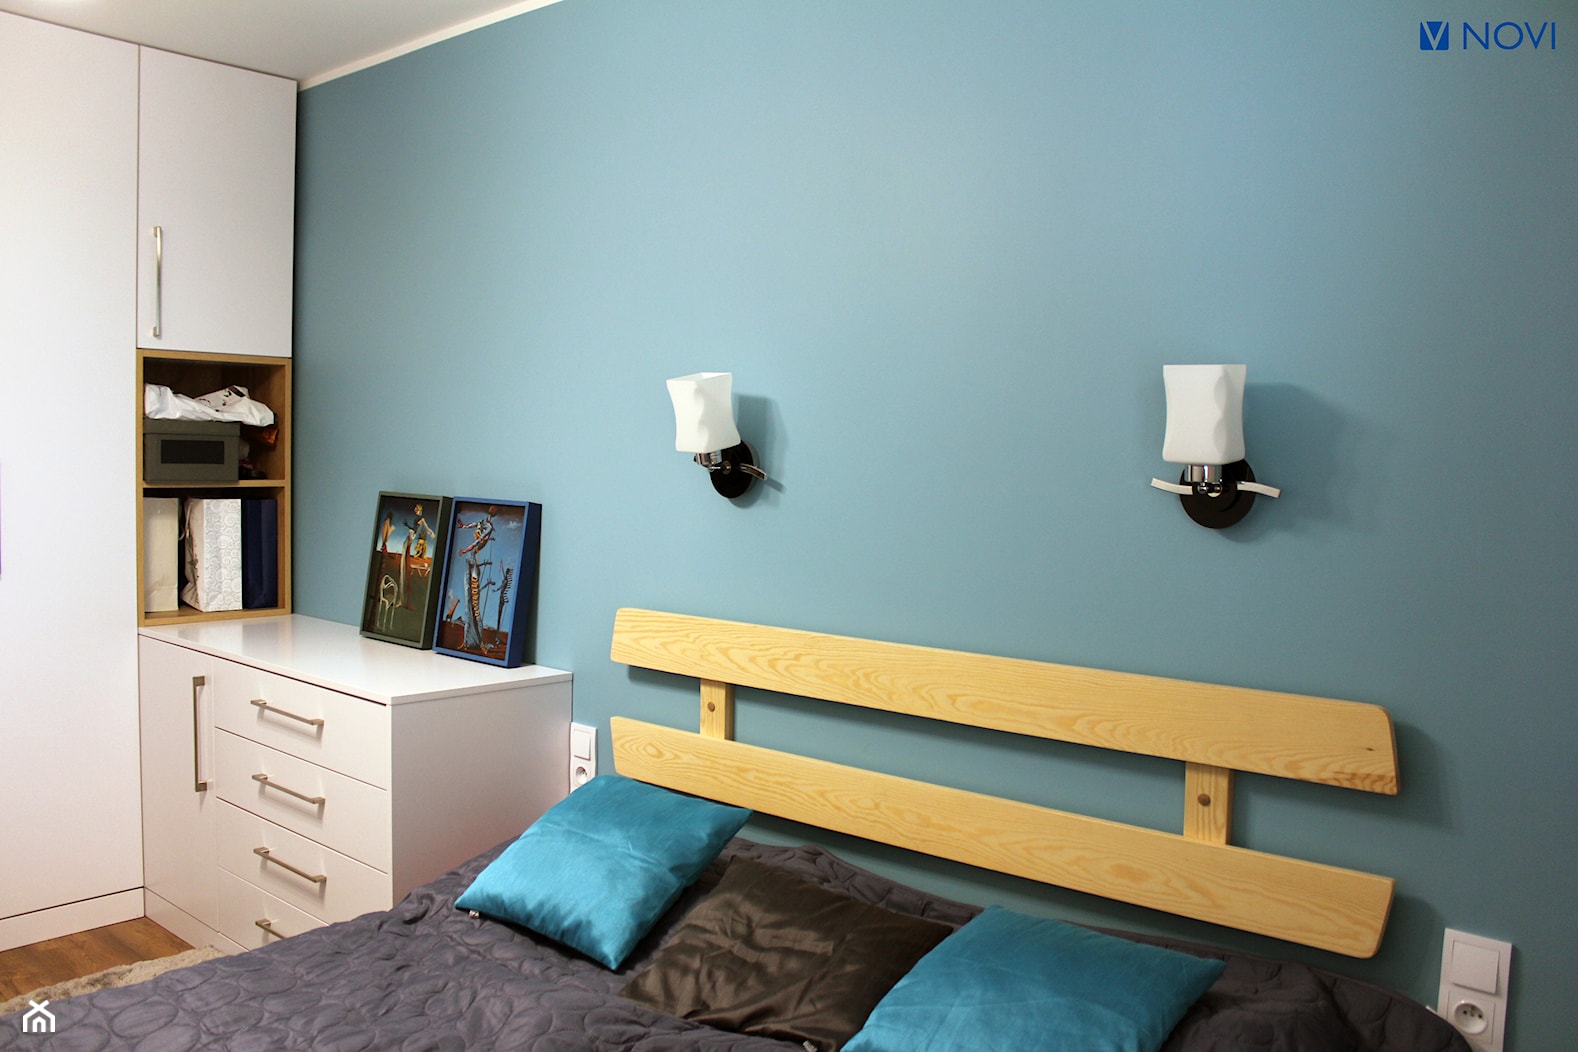 Mieszkanie w bloku 70m2 - Mała niebieska sypialnia, styl nowoczesny - zdjęcie od NOVI projektowanie - Homebook